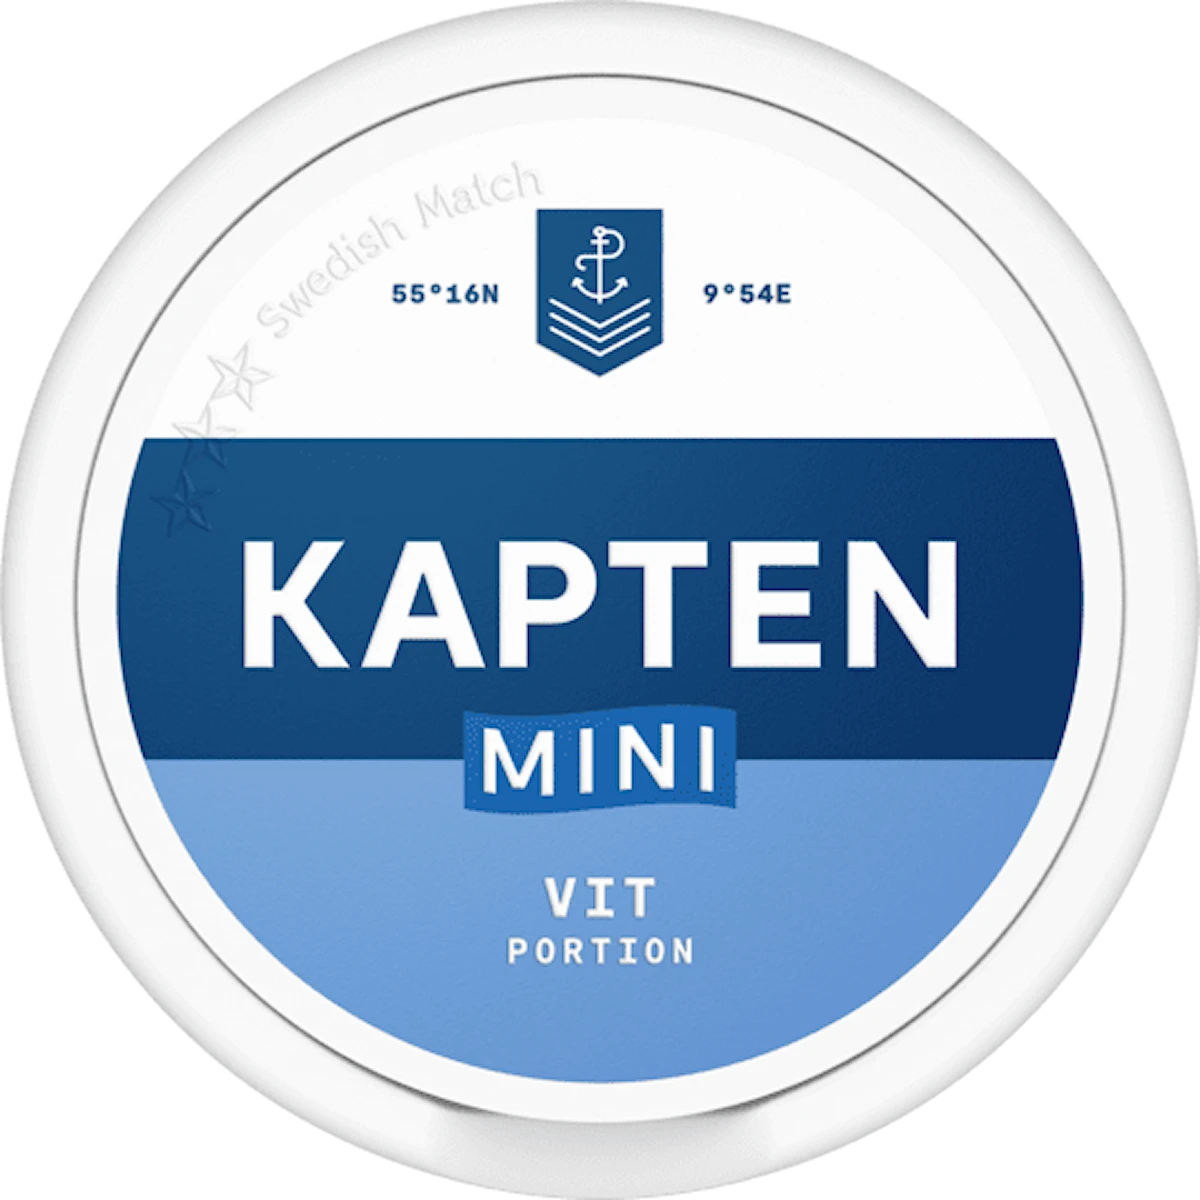 Kapten Vit Portion Mini